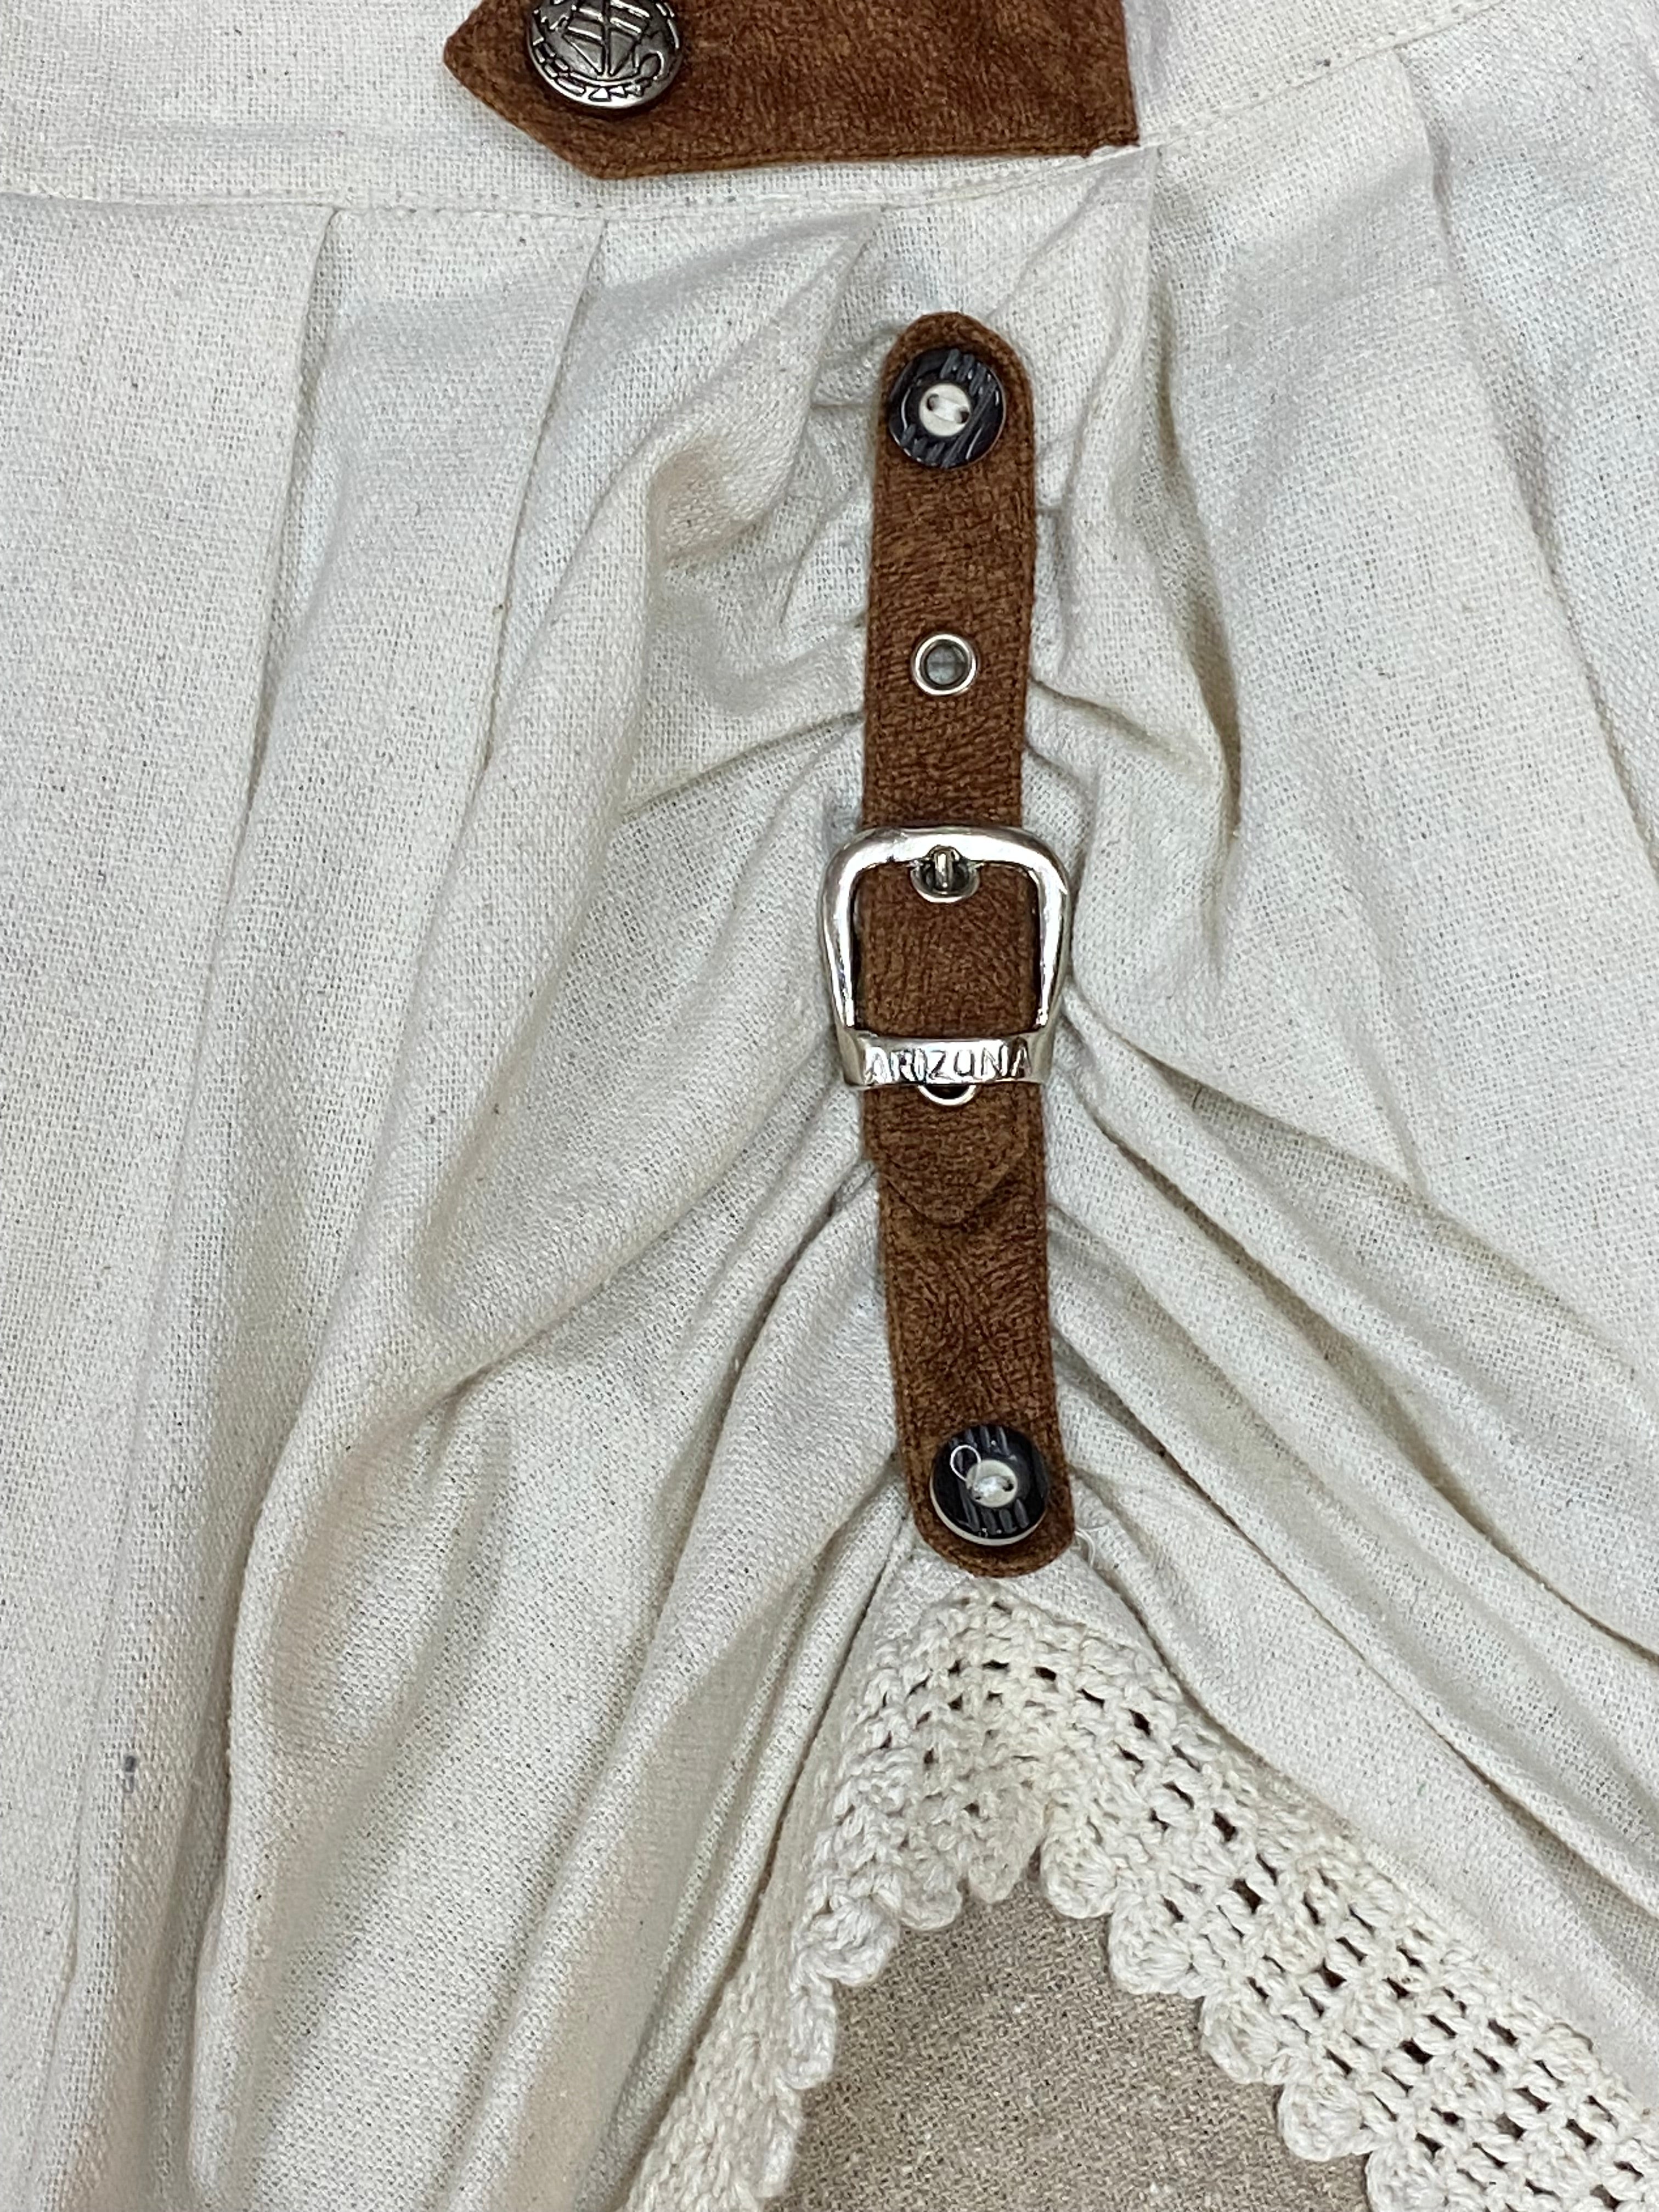 Kurzer Trachtenrock von der Marke Oharivari beige/creme Gr.XL Vintage